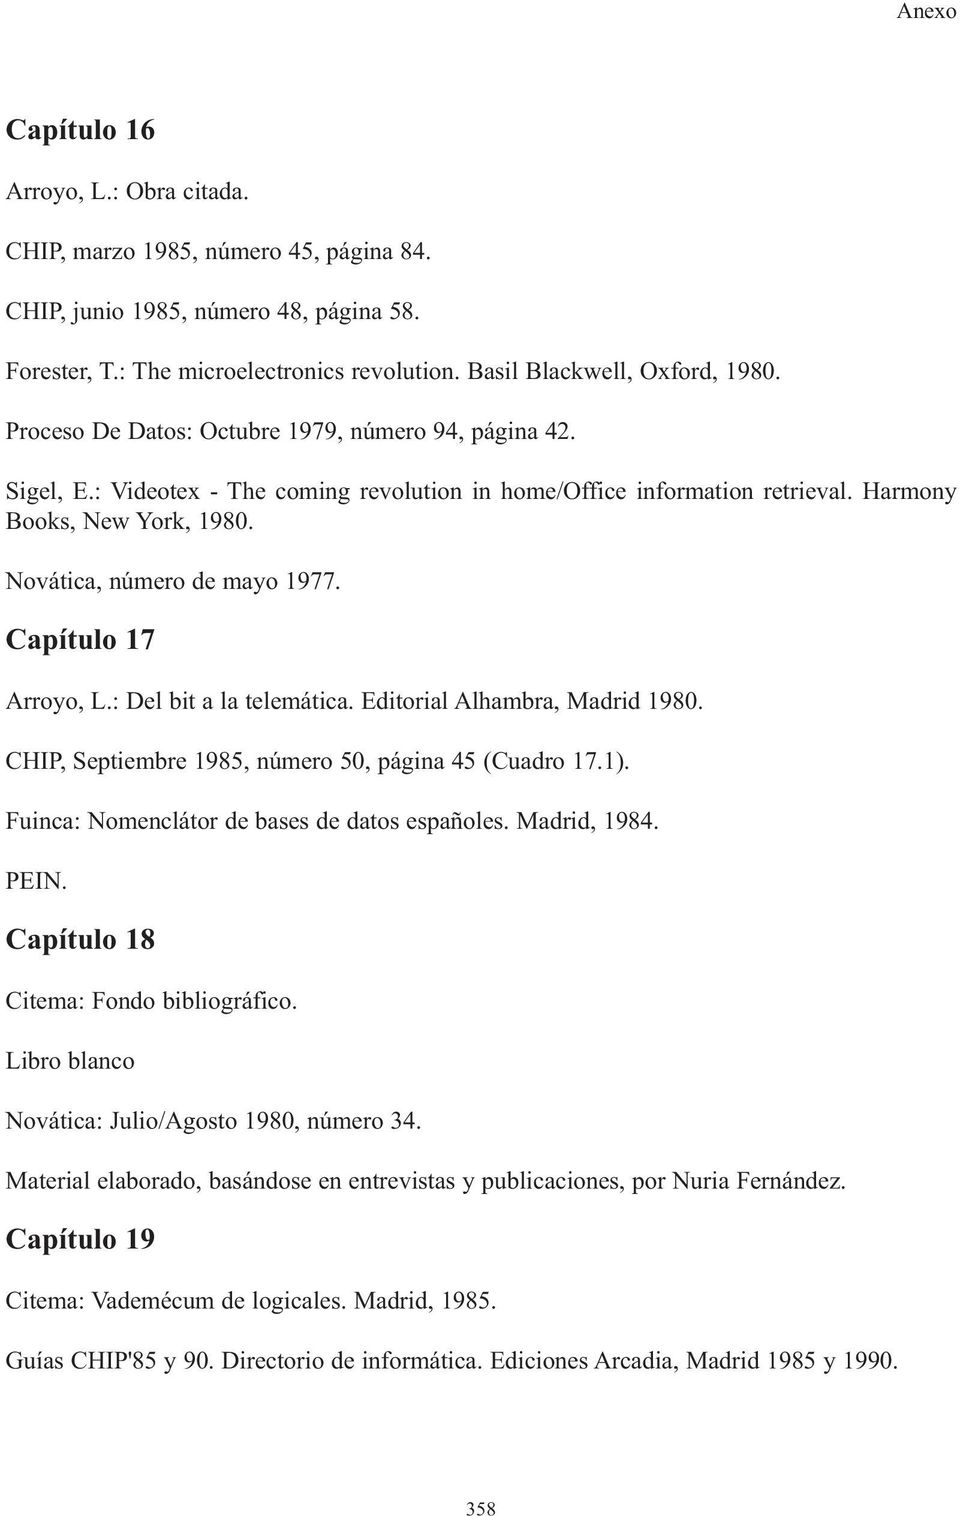 Capítulo 17 Arroyo, L.: Del bit a la telemática. Editorial Alhambra, Madrid 1980. CHIP, Septiembre 1985, número 50, página 45 (Cuadro 17.1). Fuinca: Nomenclátor de bases de datos españoles.